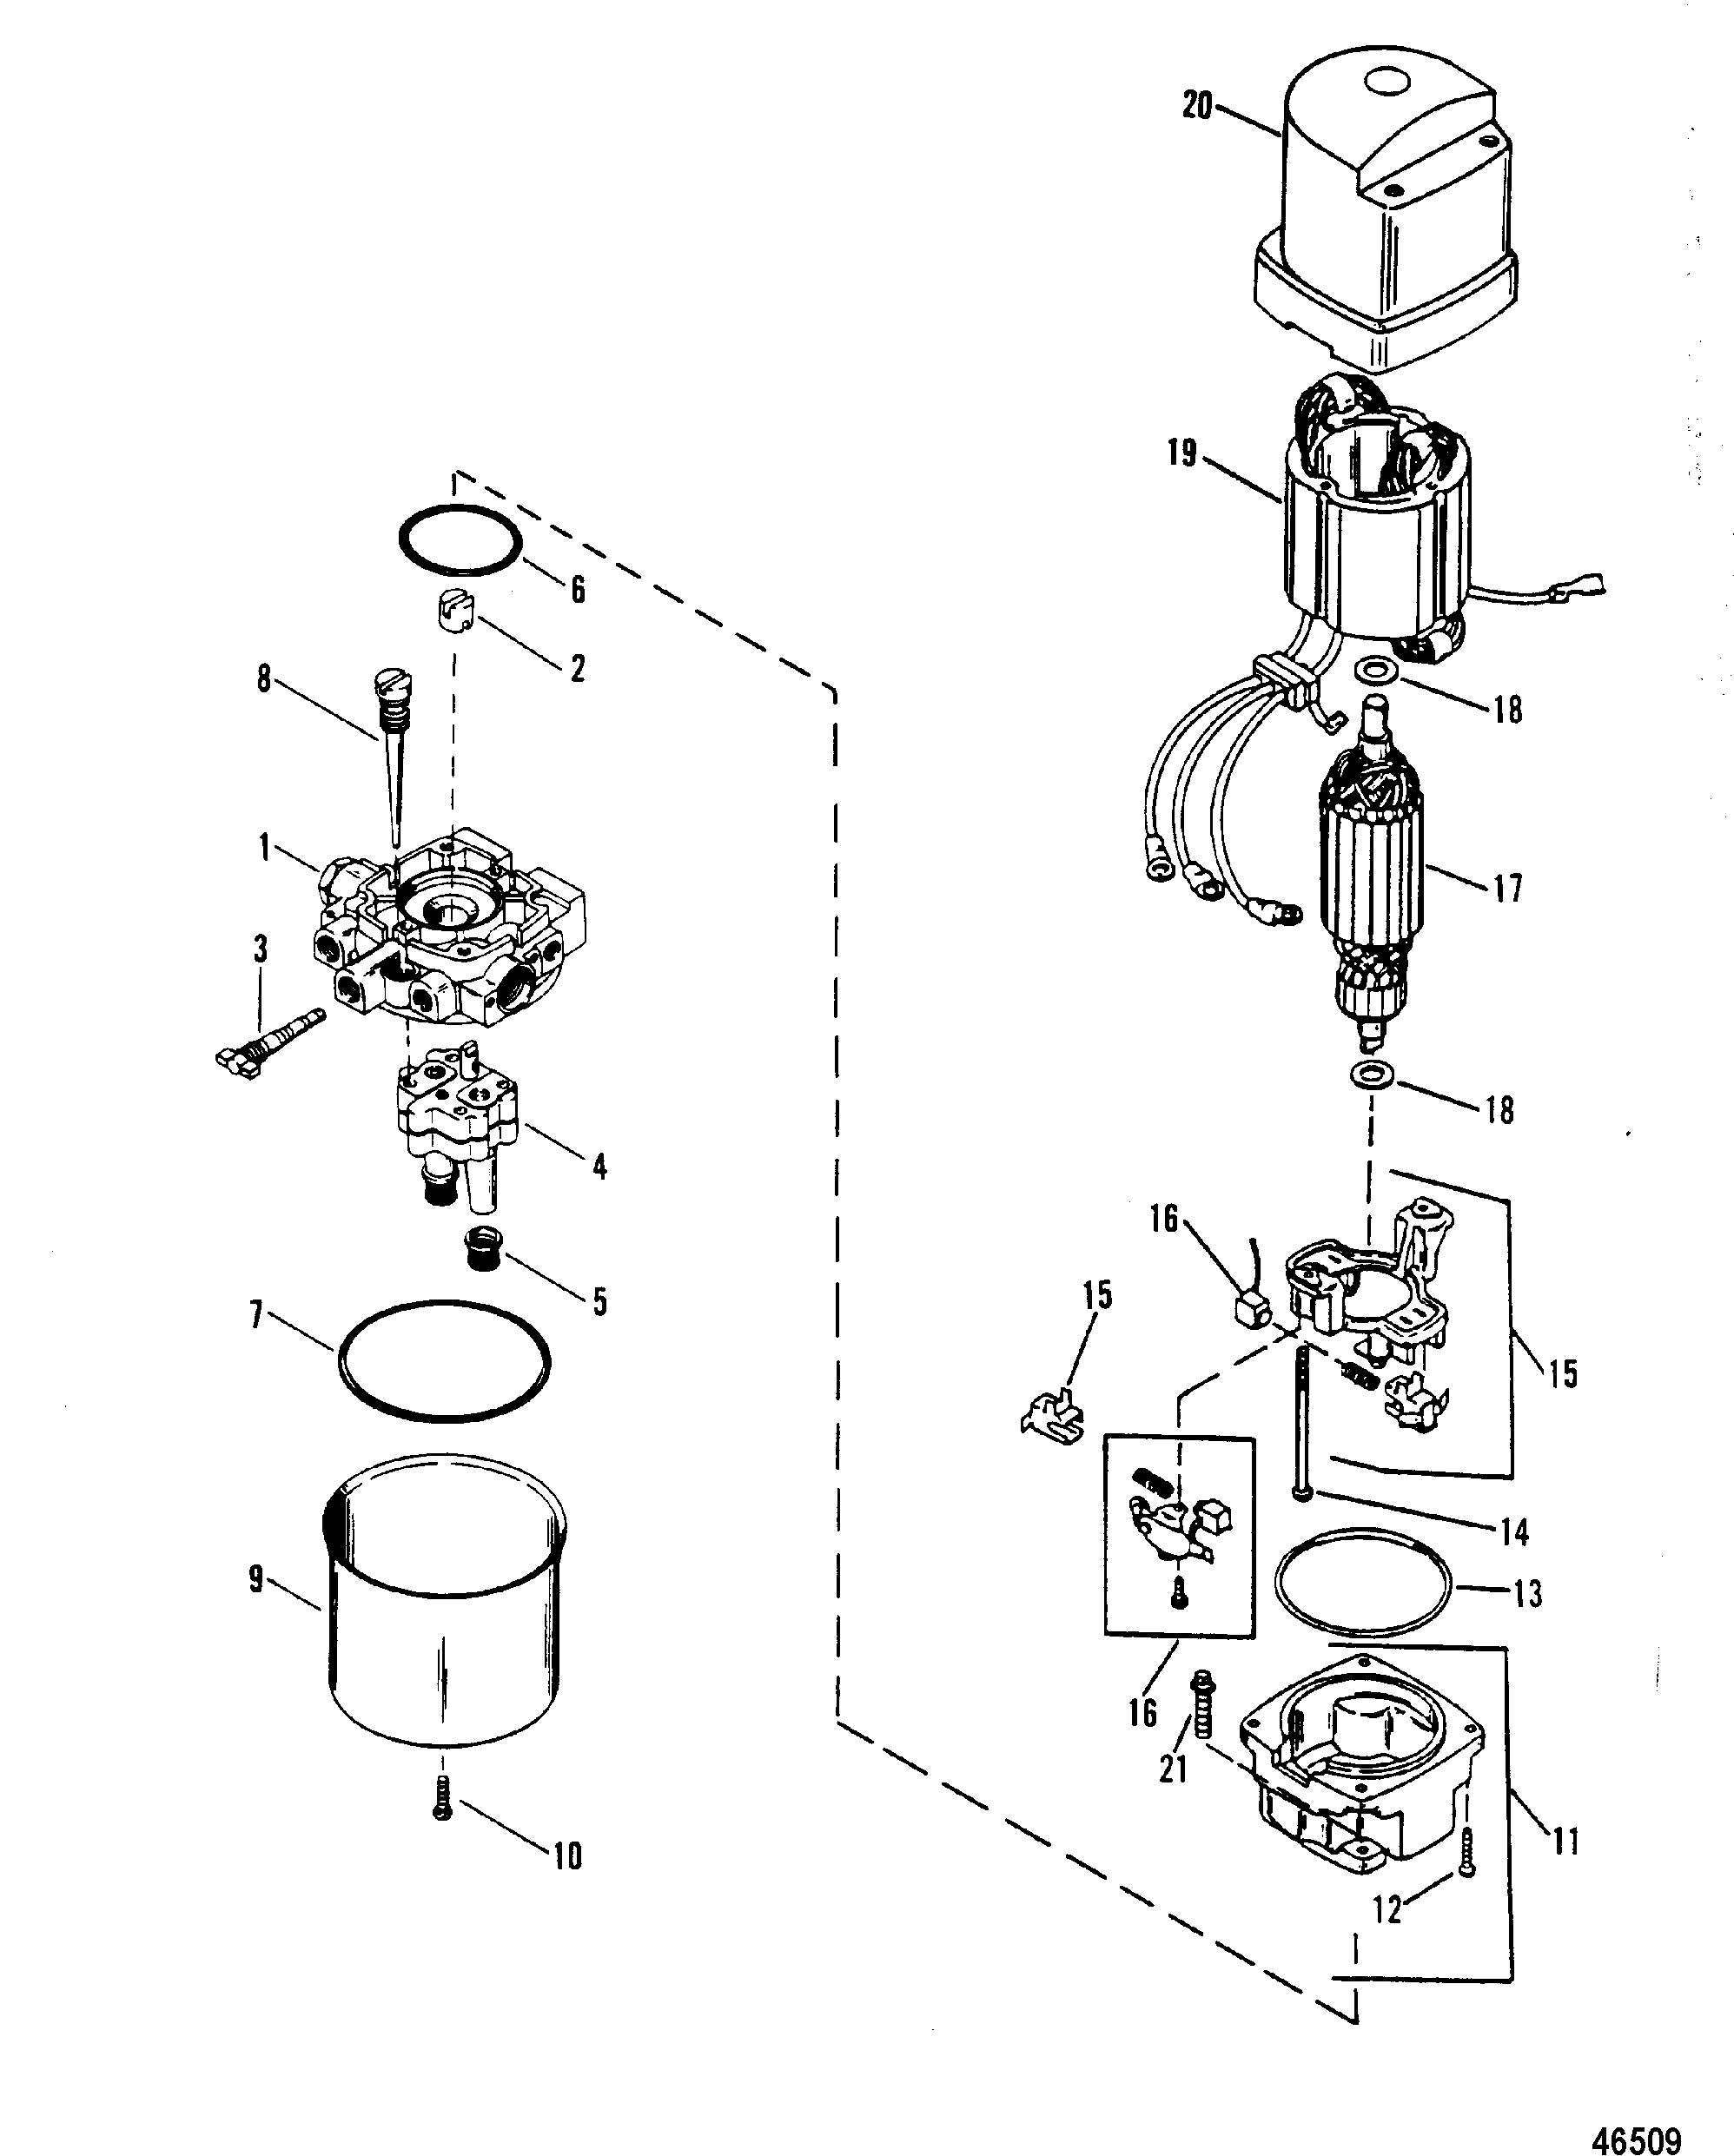 HYDRAULIC PUMP(DESIGN II)